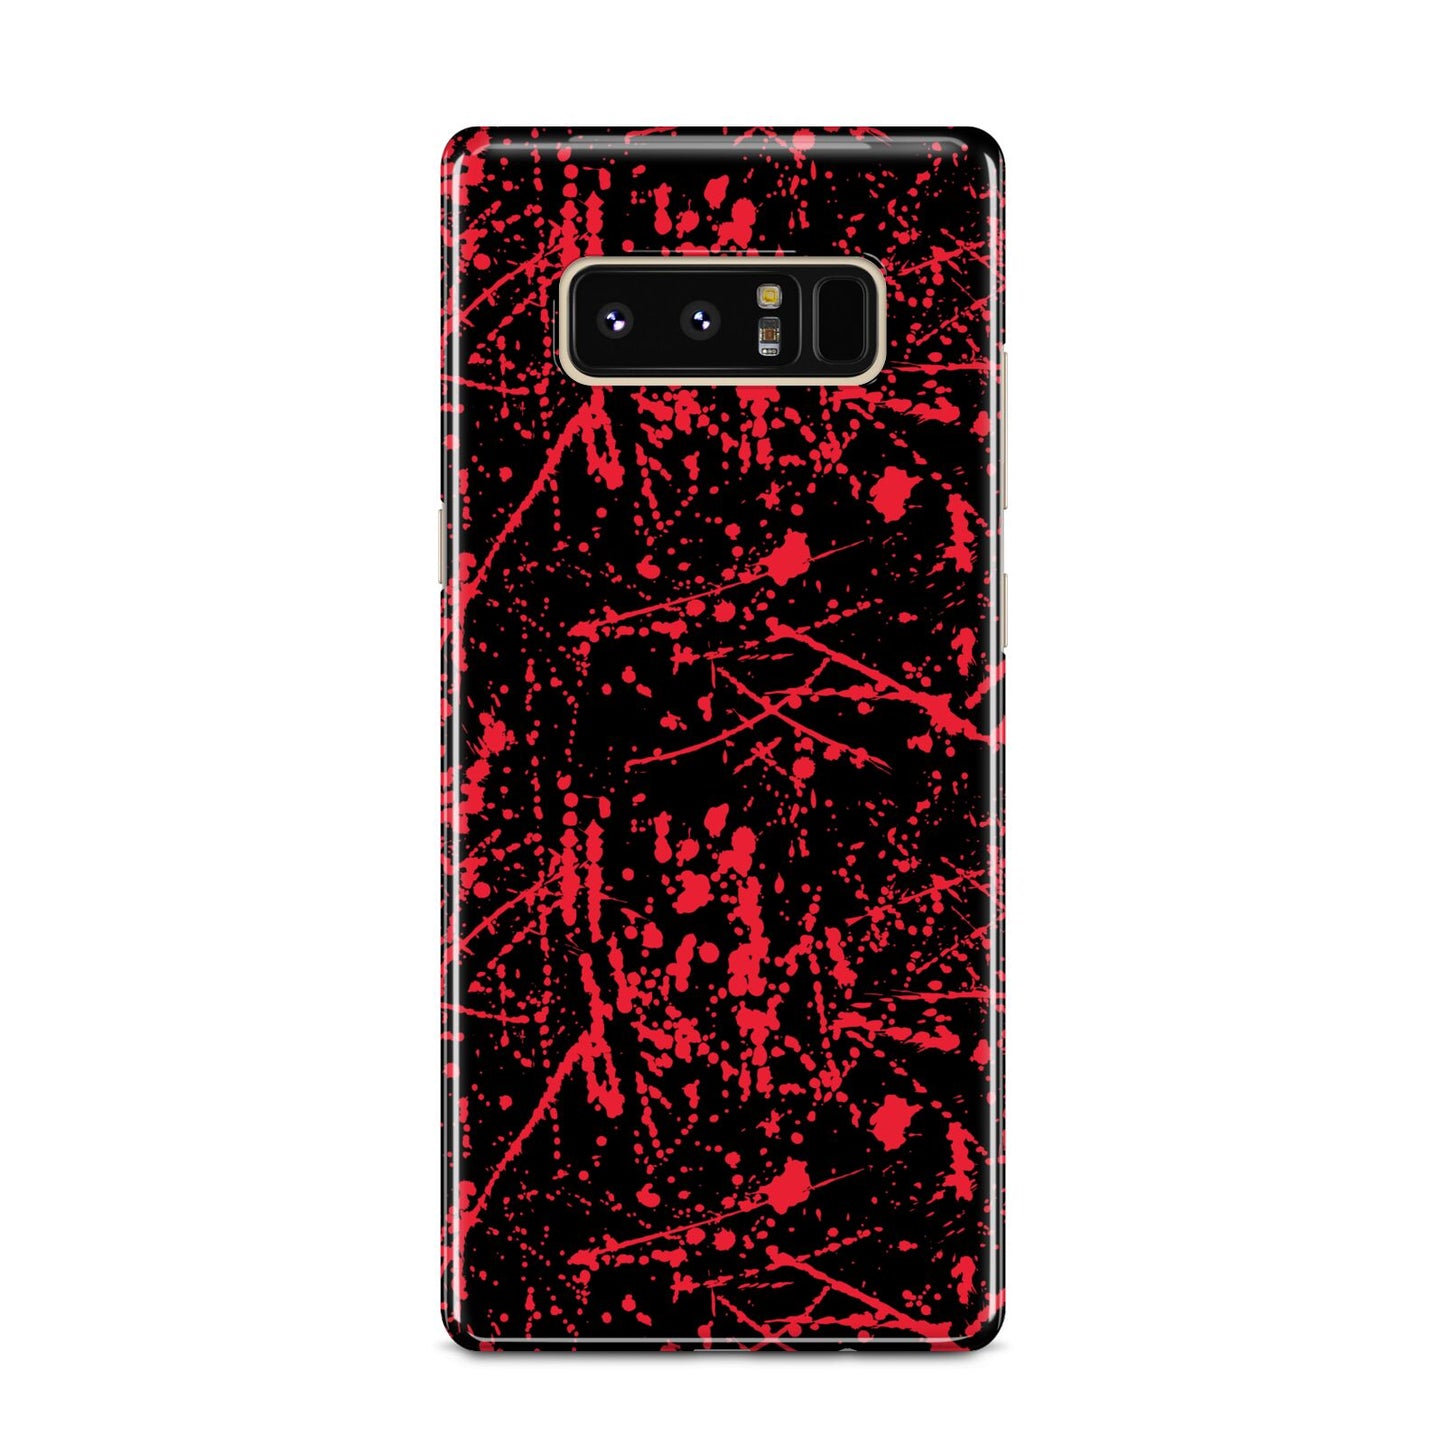 Blood Splatters Samsung Galaxy Note 8 Case